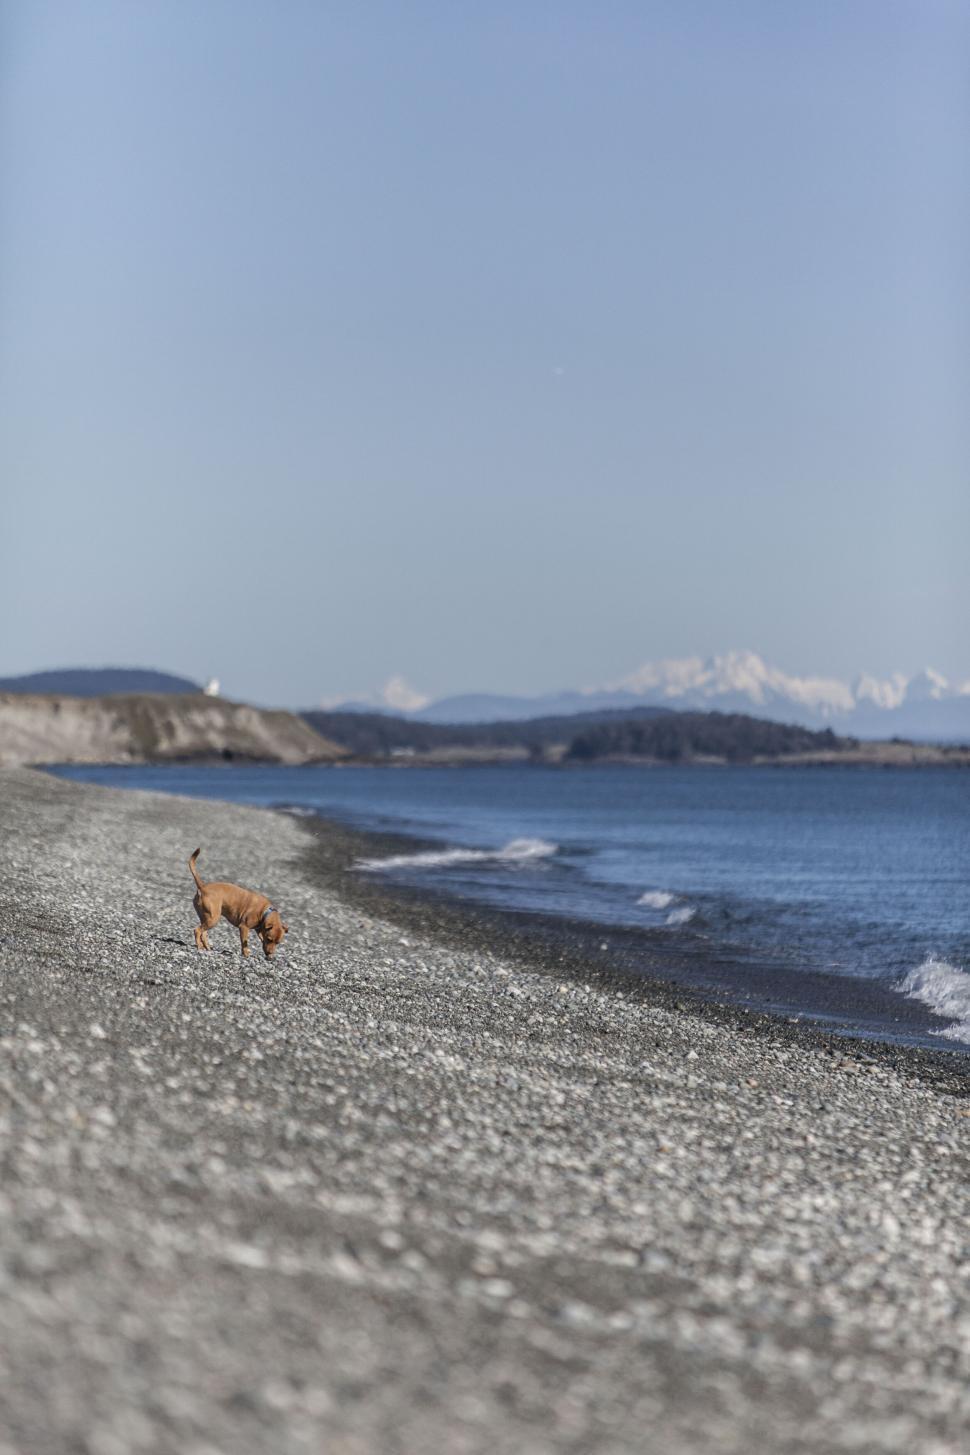 Free Image of Dog walking on pebble beach shoreline 